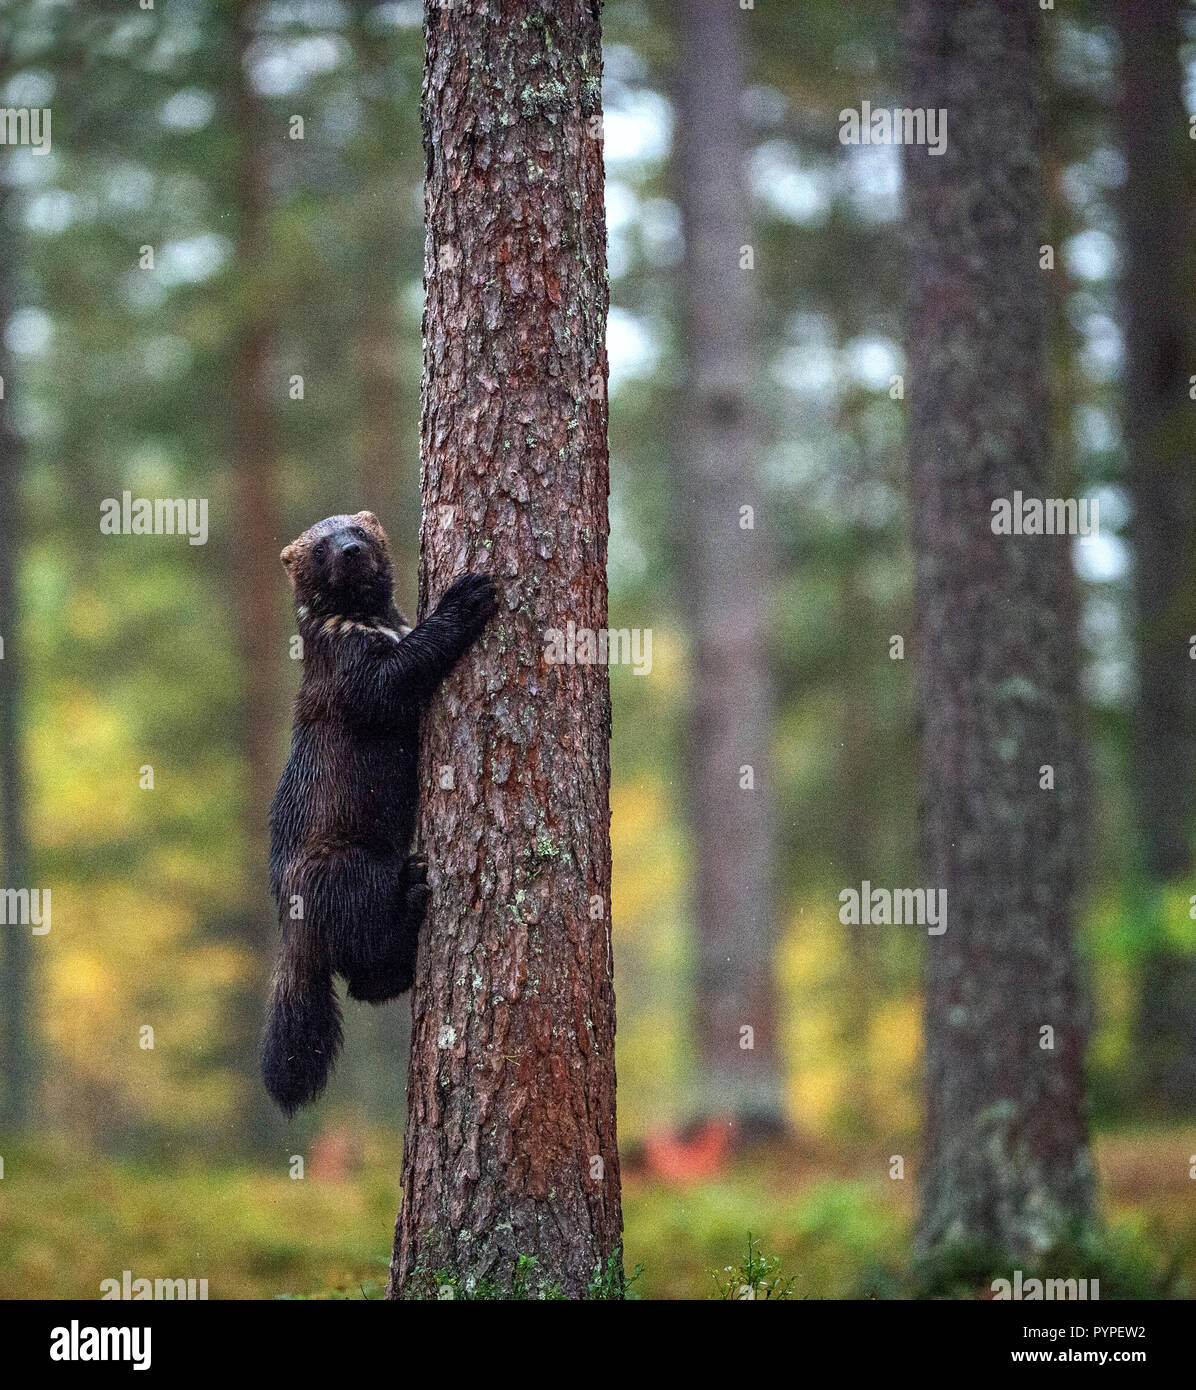 Wolverine grimpe dans un arbre. La nature sauvage, l'habitat naturel. Glouton, carcajou, les ours, ou quickhatch (Gulo gulo) Banque D'Images